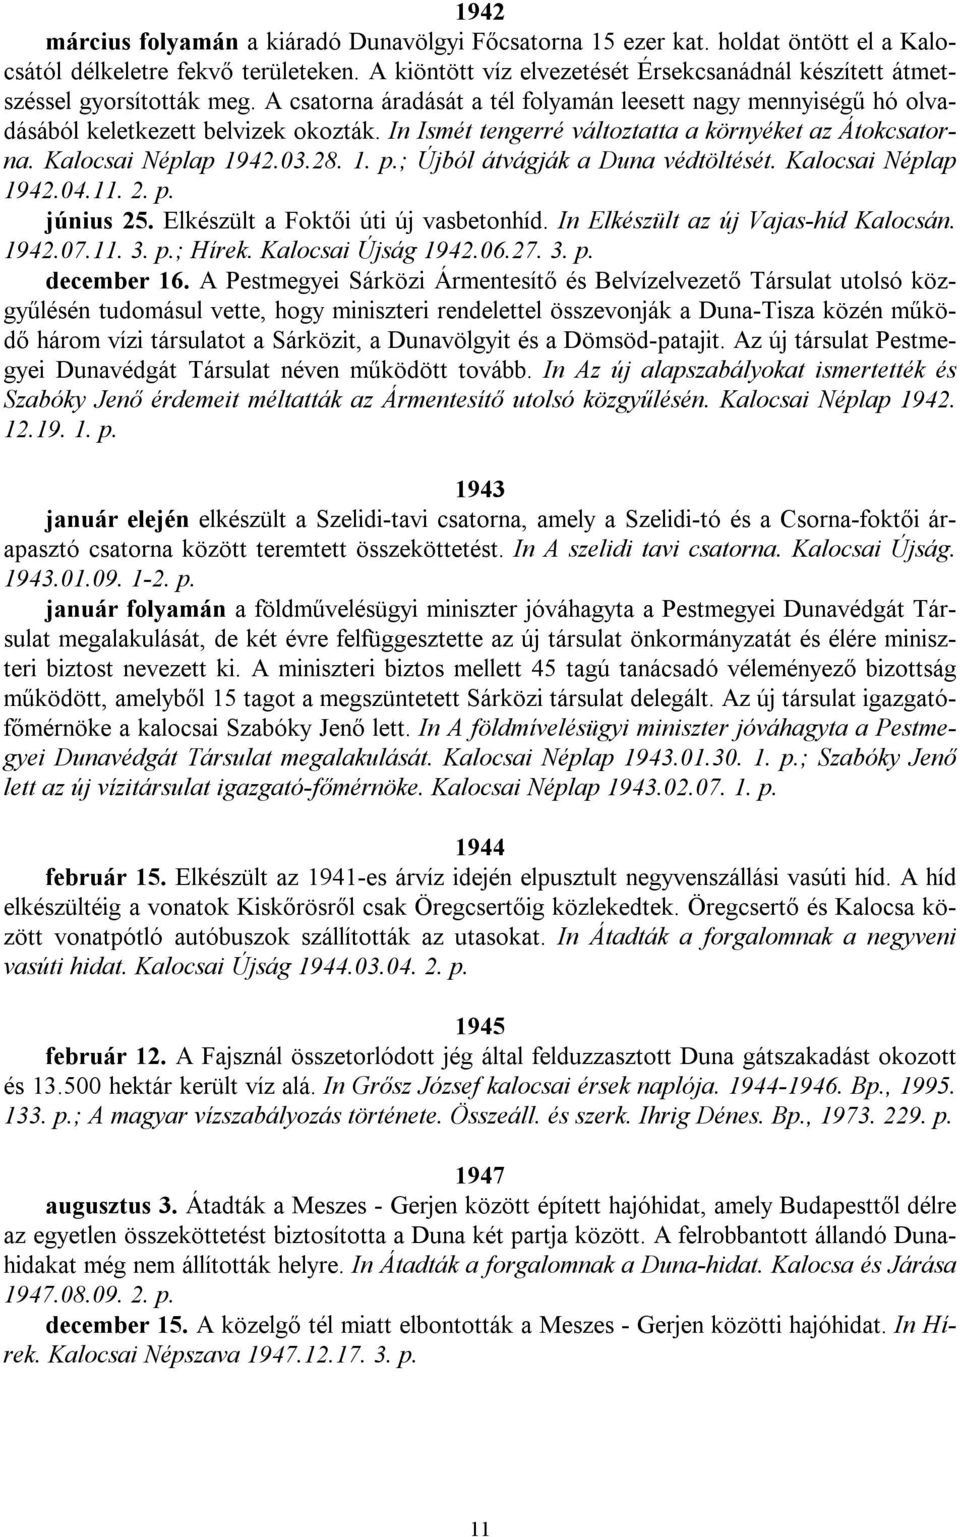 In Ismét tengerré változtatta a környéket az Átokcsatorna. Kalocsai Néplap 1942.03.28. 1. p.; Újból átvágják a Duna védtöltését. Kalocsai Néplap 1942.04.11. 2. p. június 25.